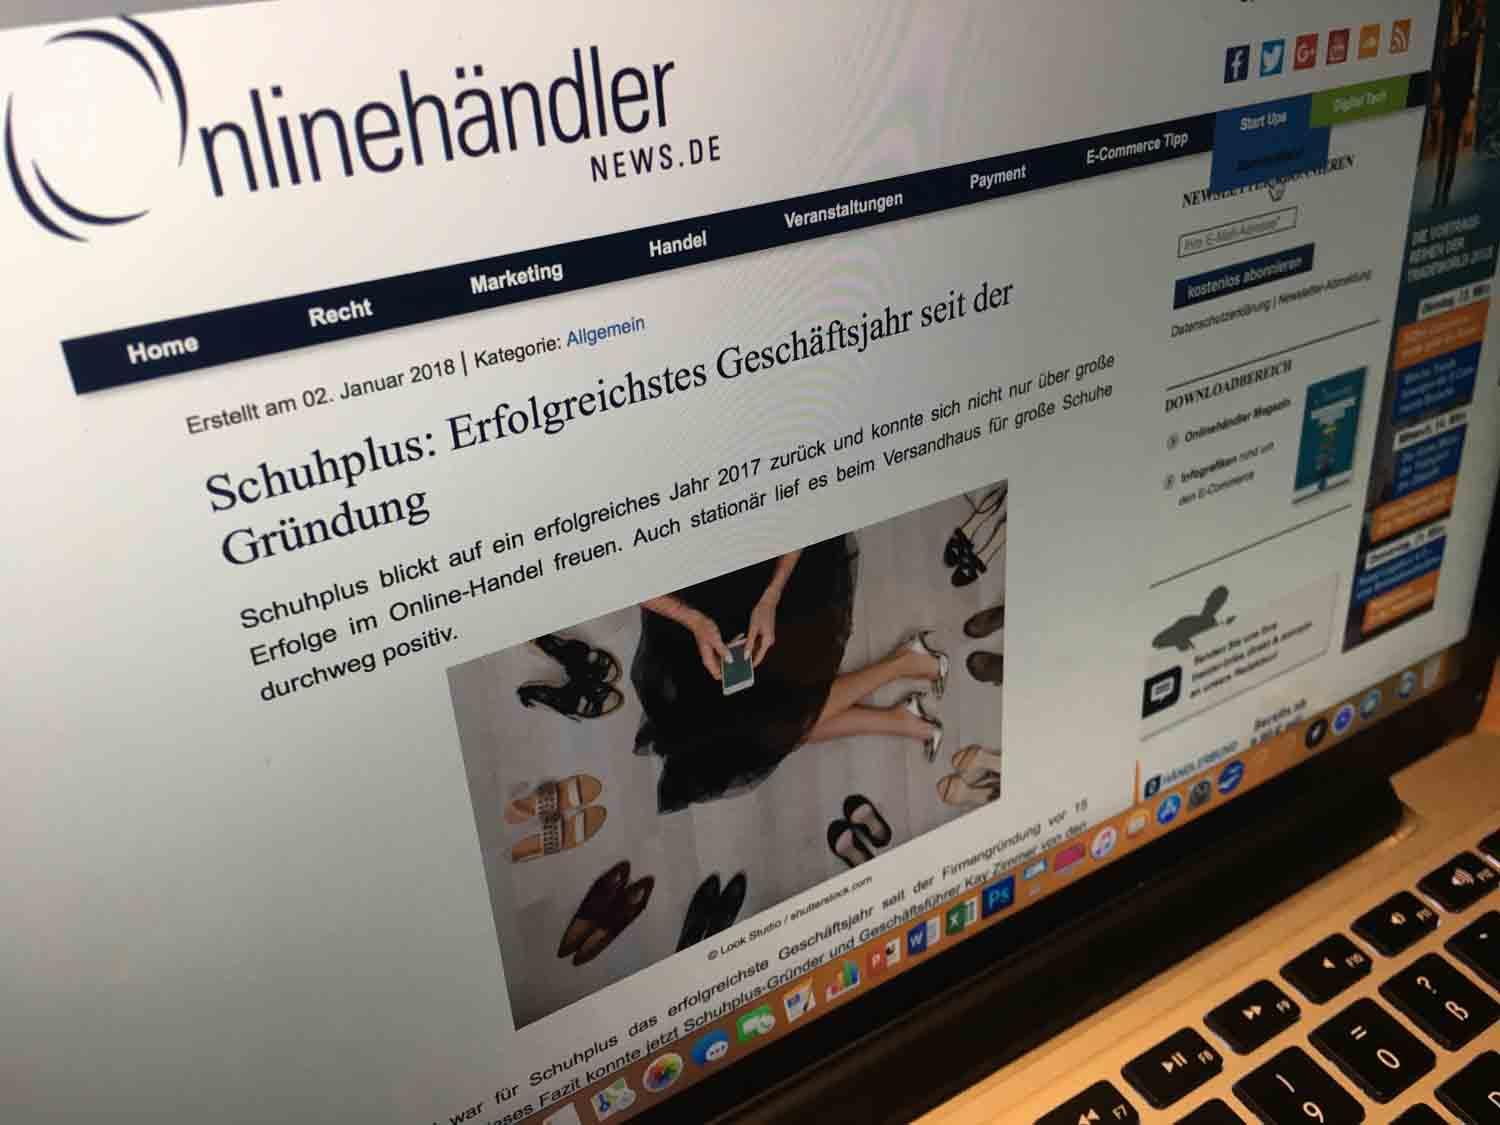 Artikel über schuhplus - Schuhe in Übergrößen - im Fachmagazin onlinehaendler-news.de